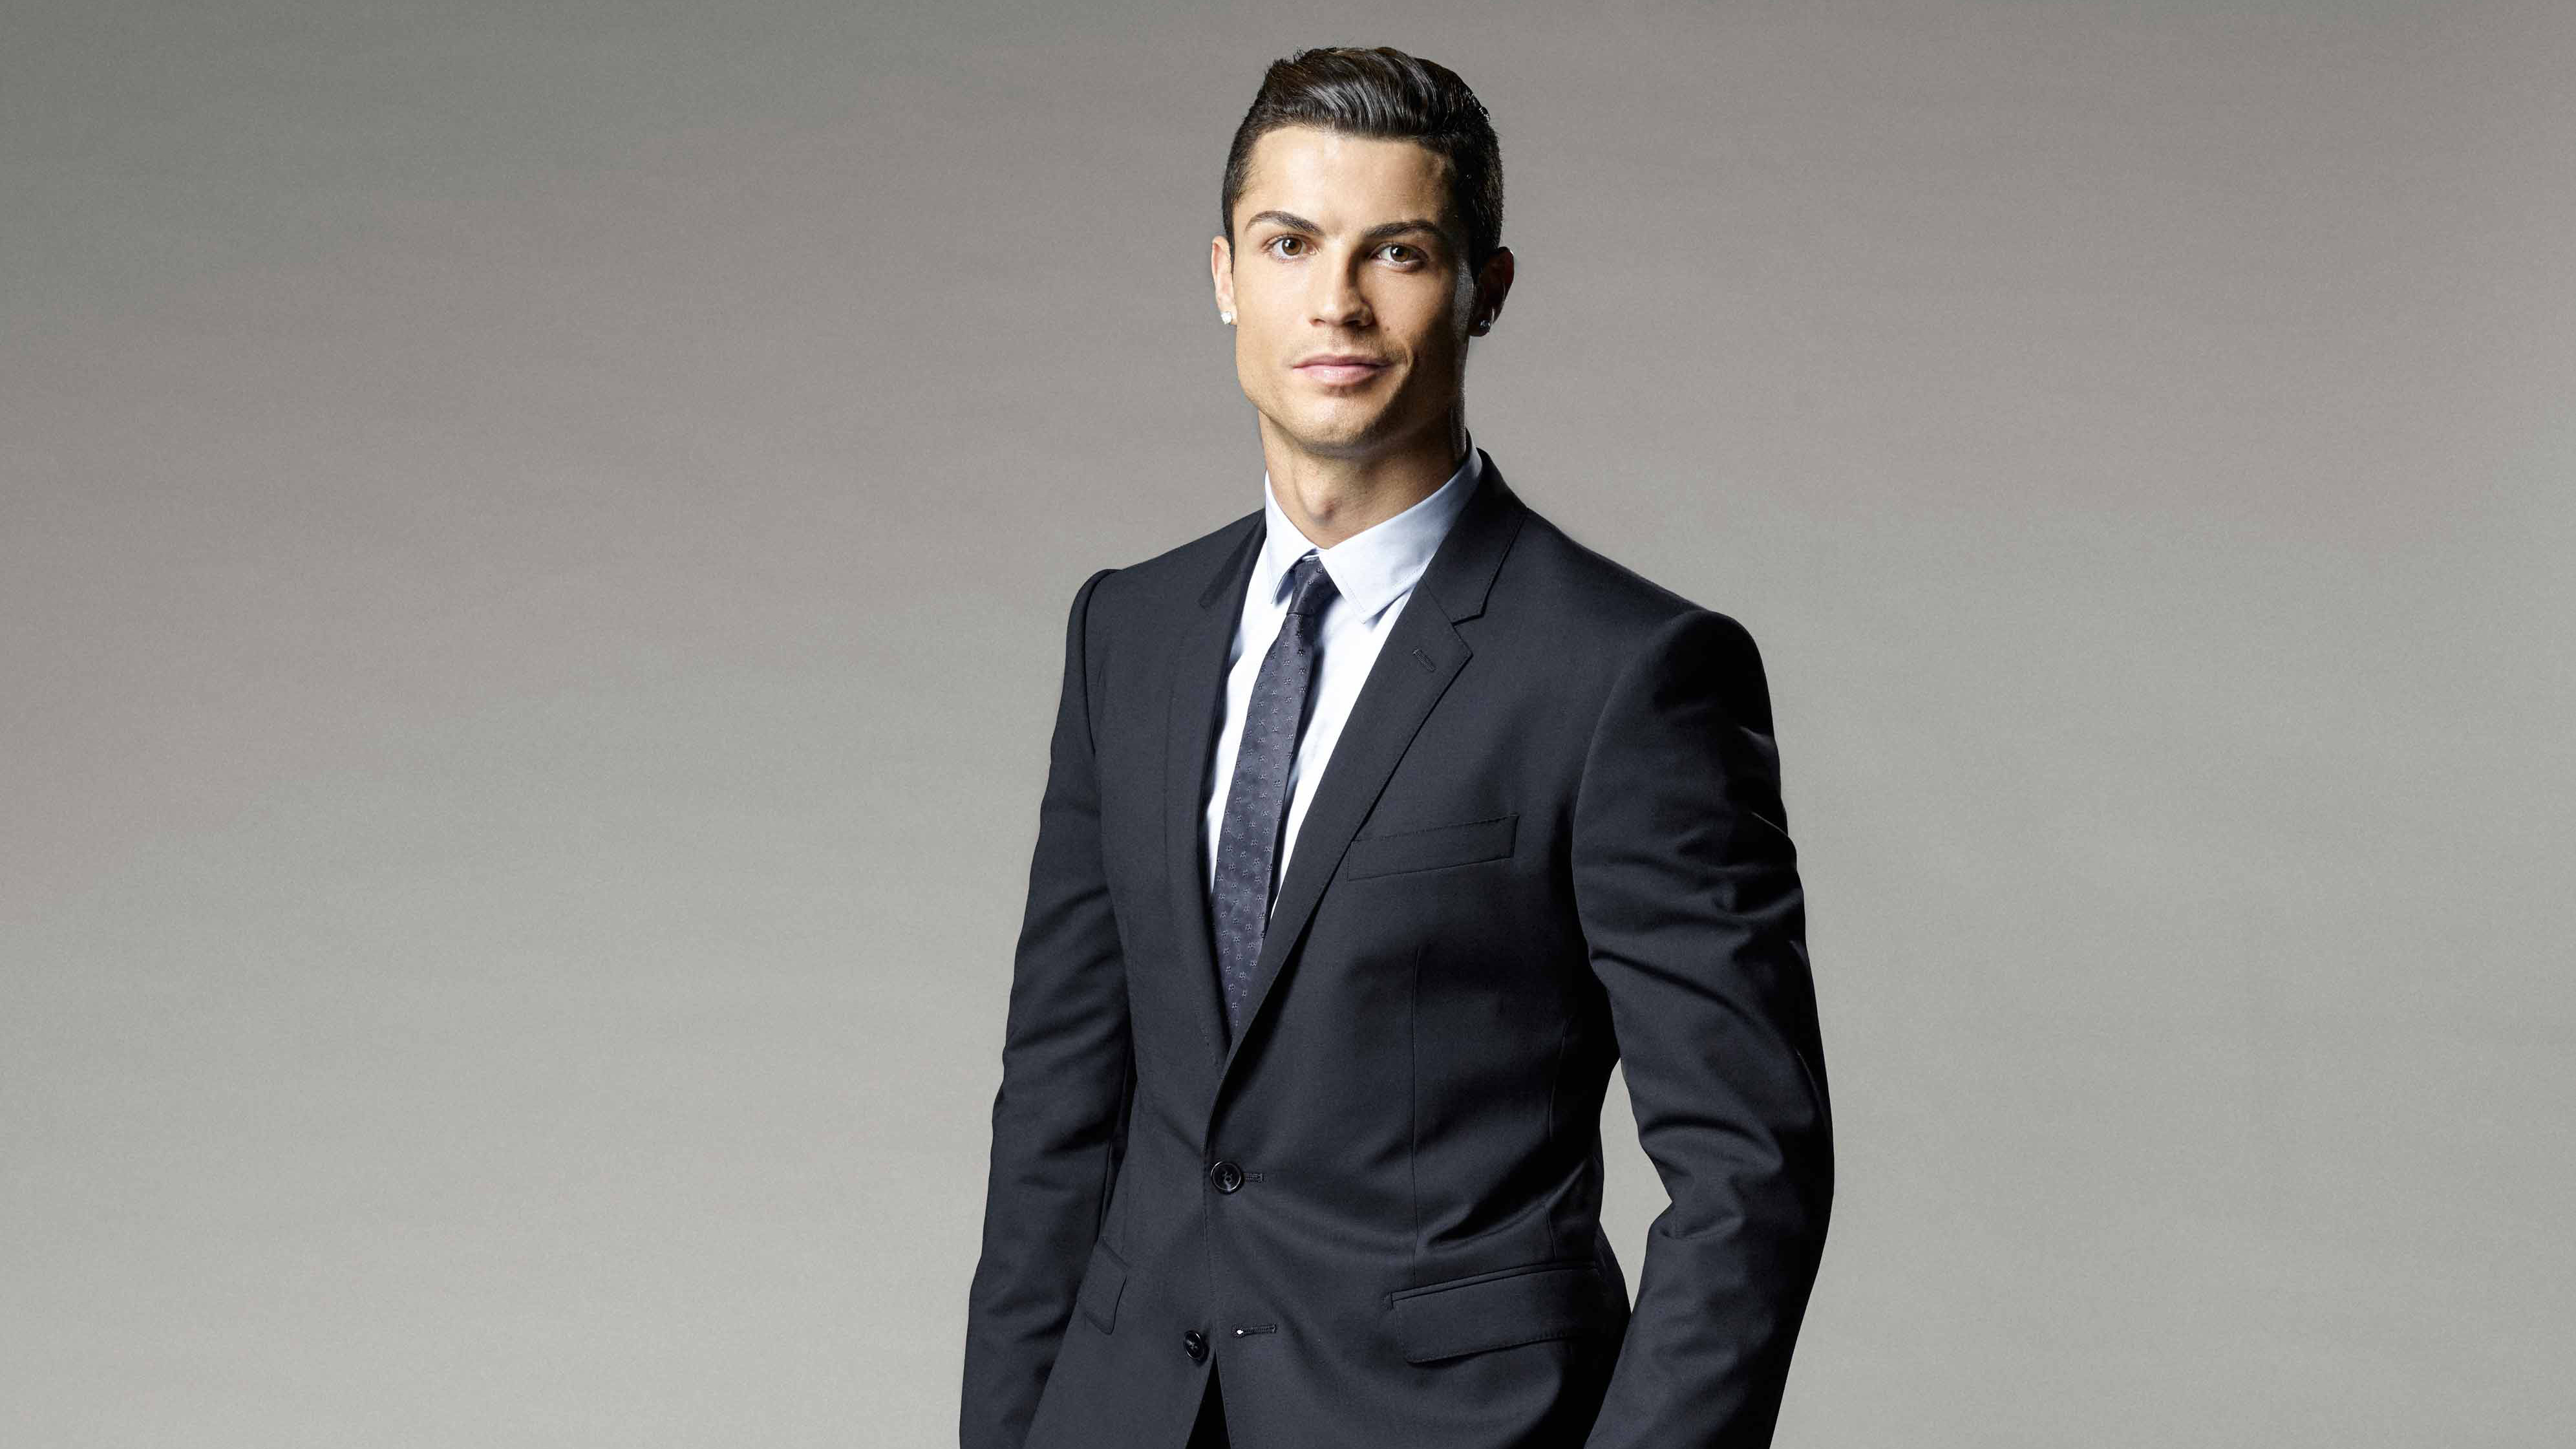 Fondos de pantalla Cristiano Ronaldo in a suit